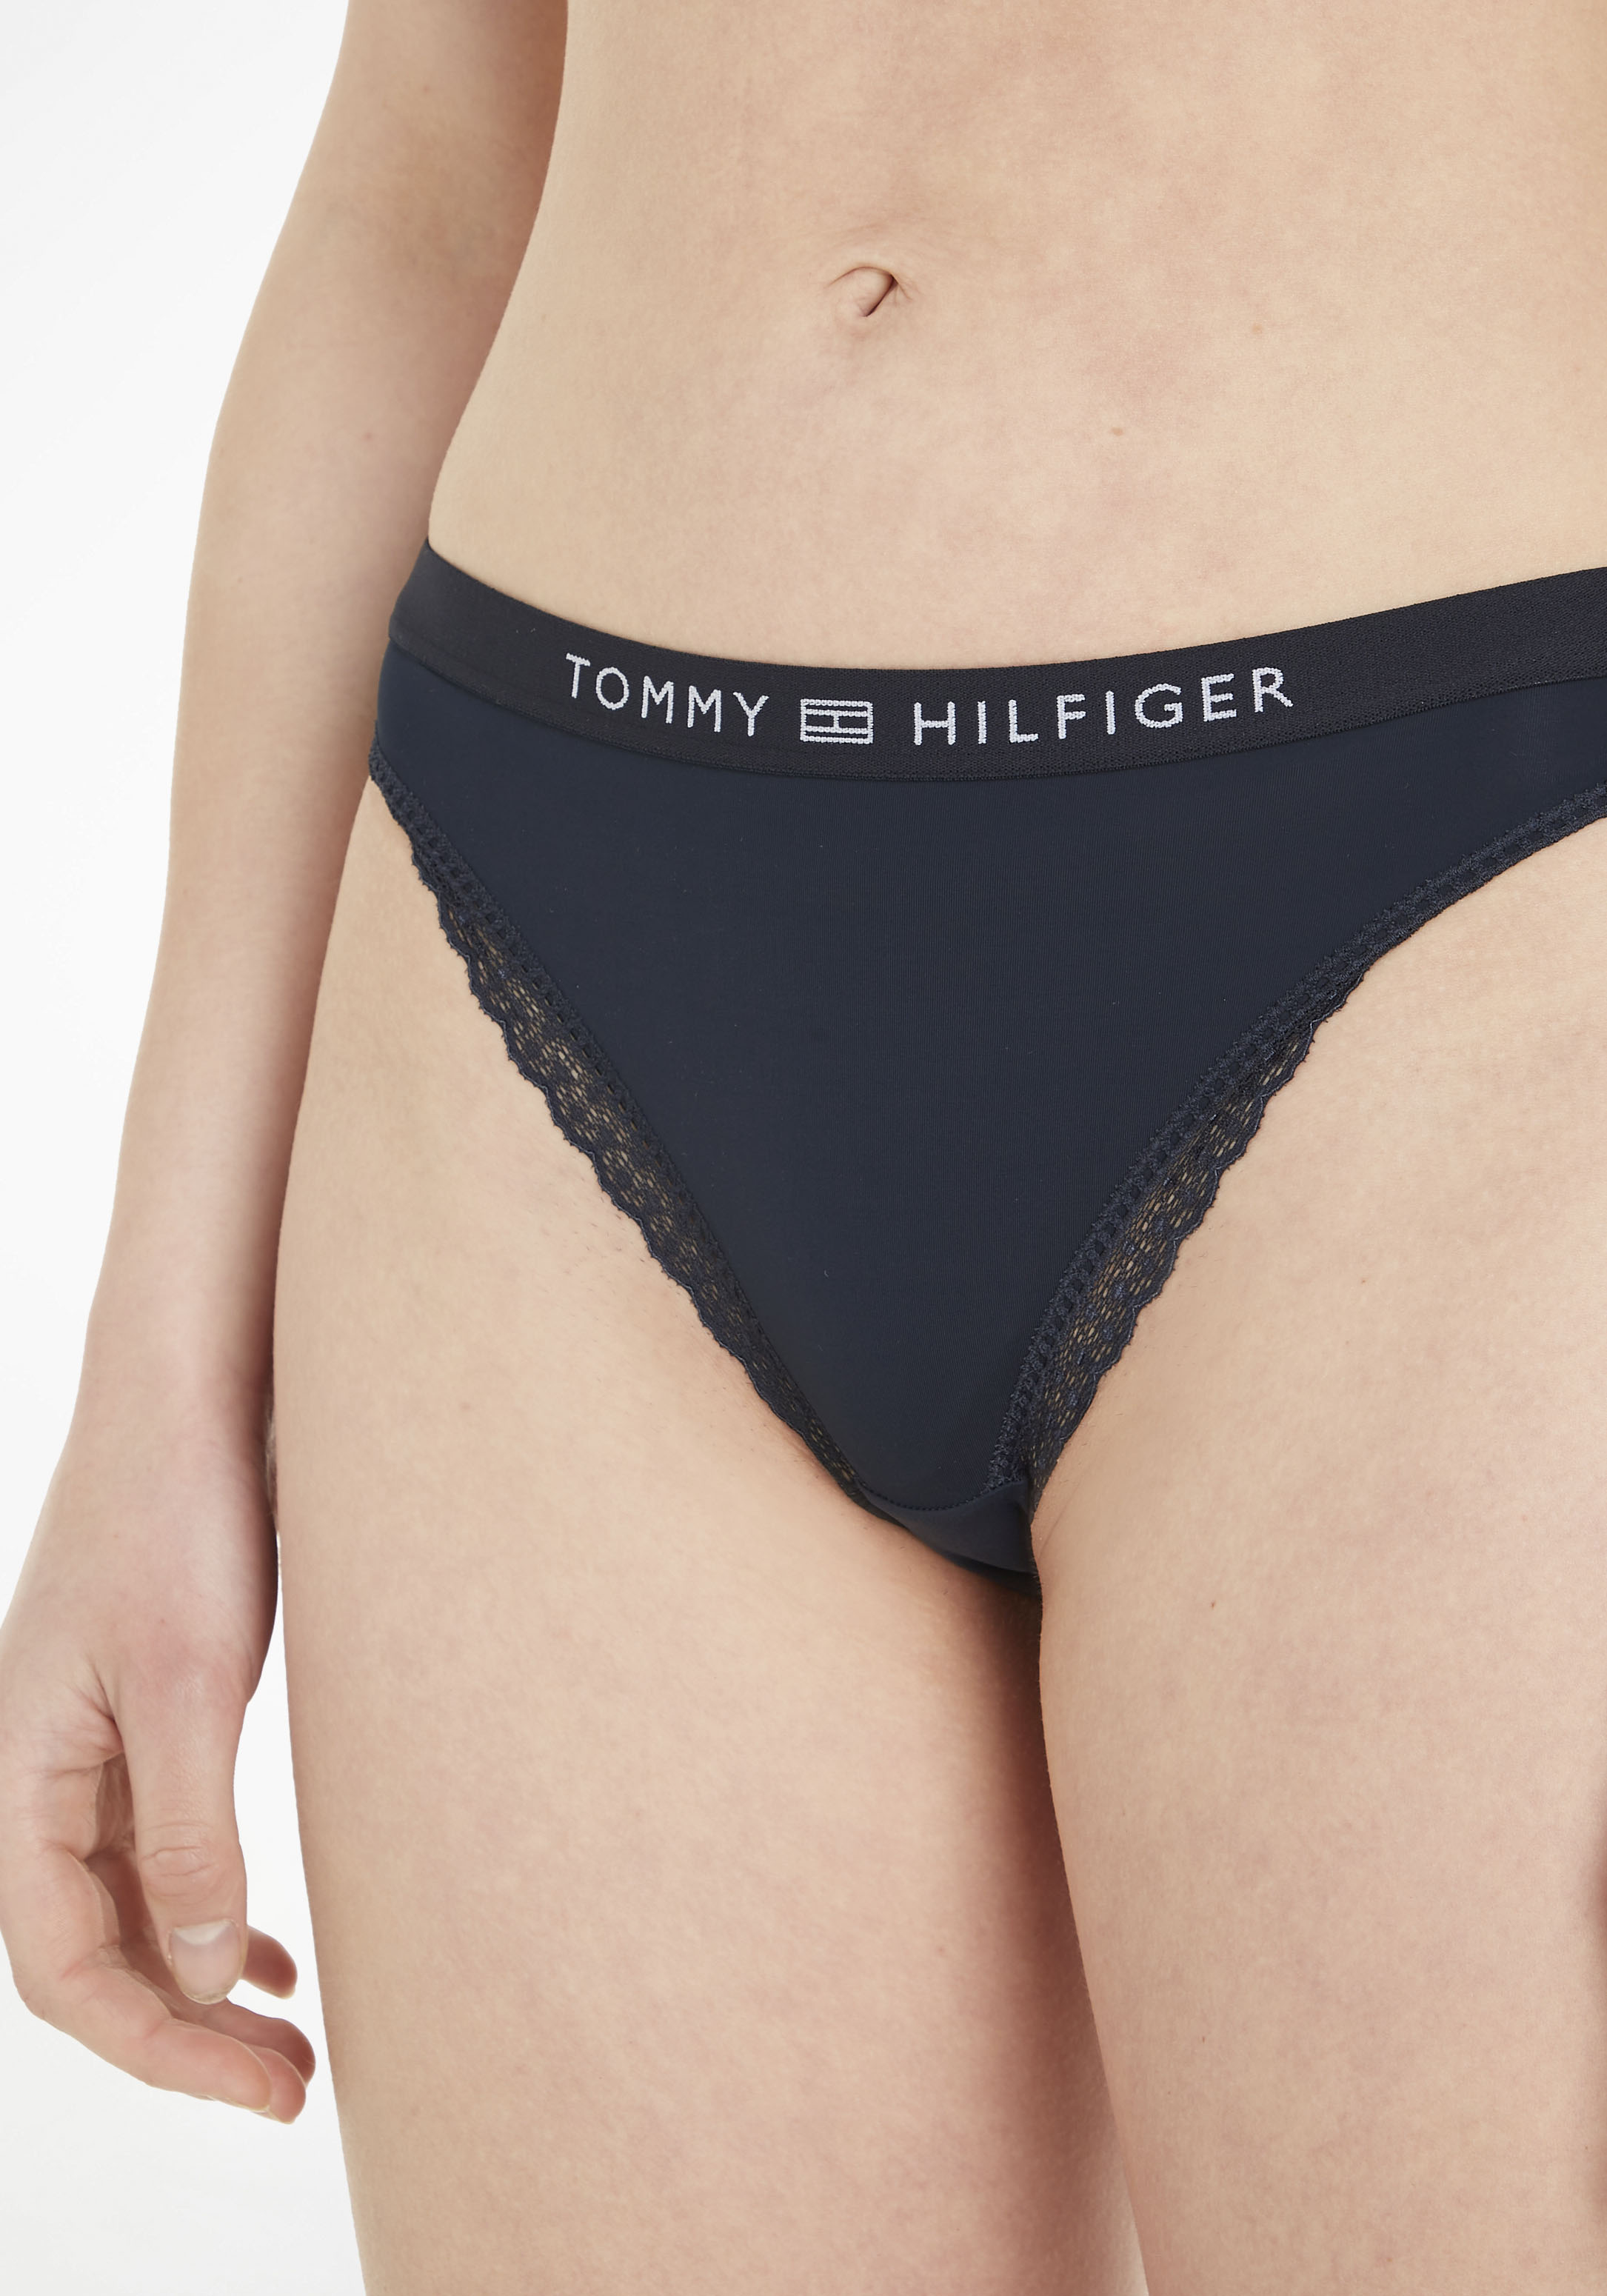 Tommy Hilfiger Underwear Slip BIKINI, mit Tommy Hilfiger Markenlabel